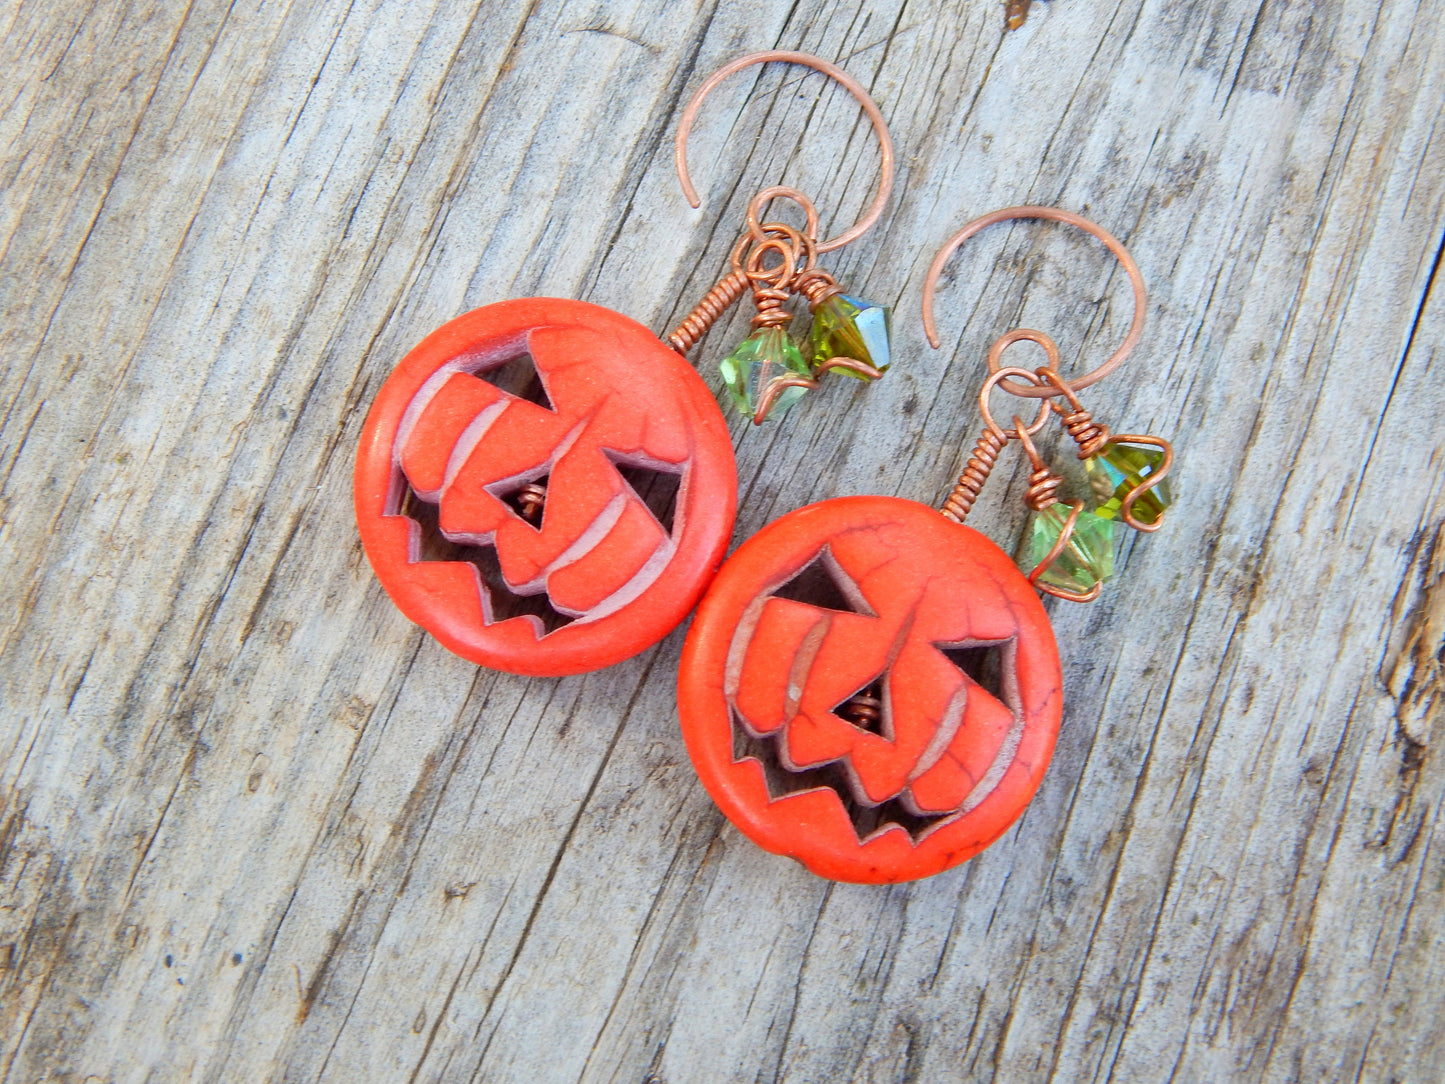 Pumpkin earrings with swarovski